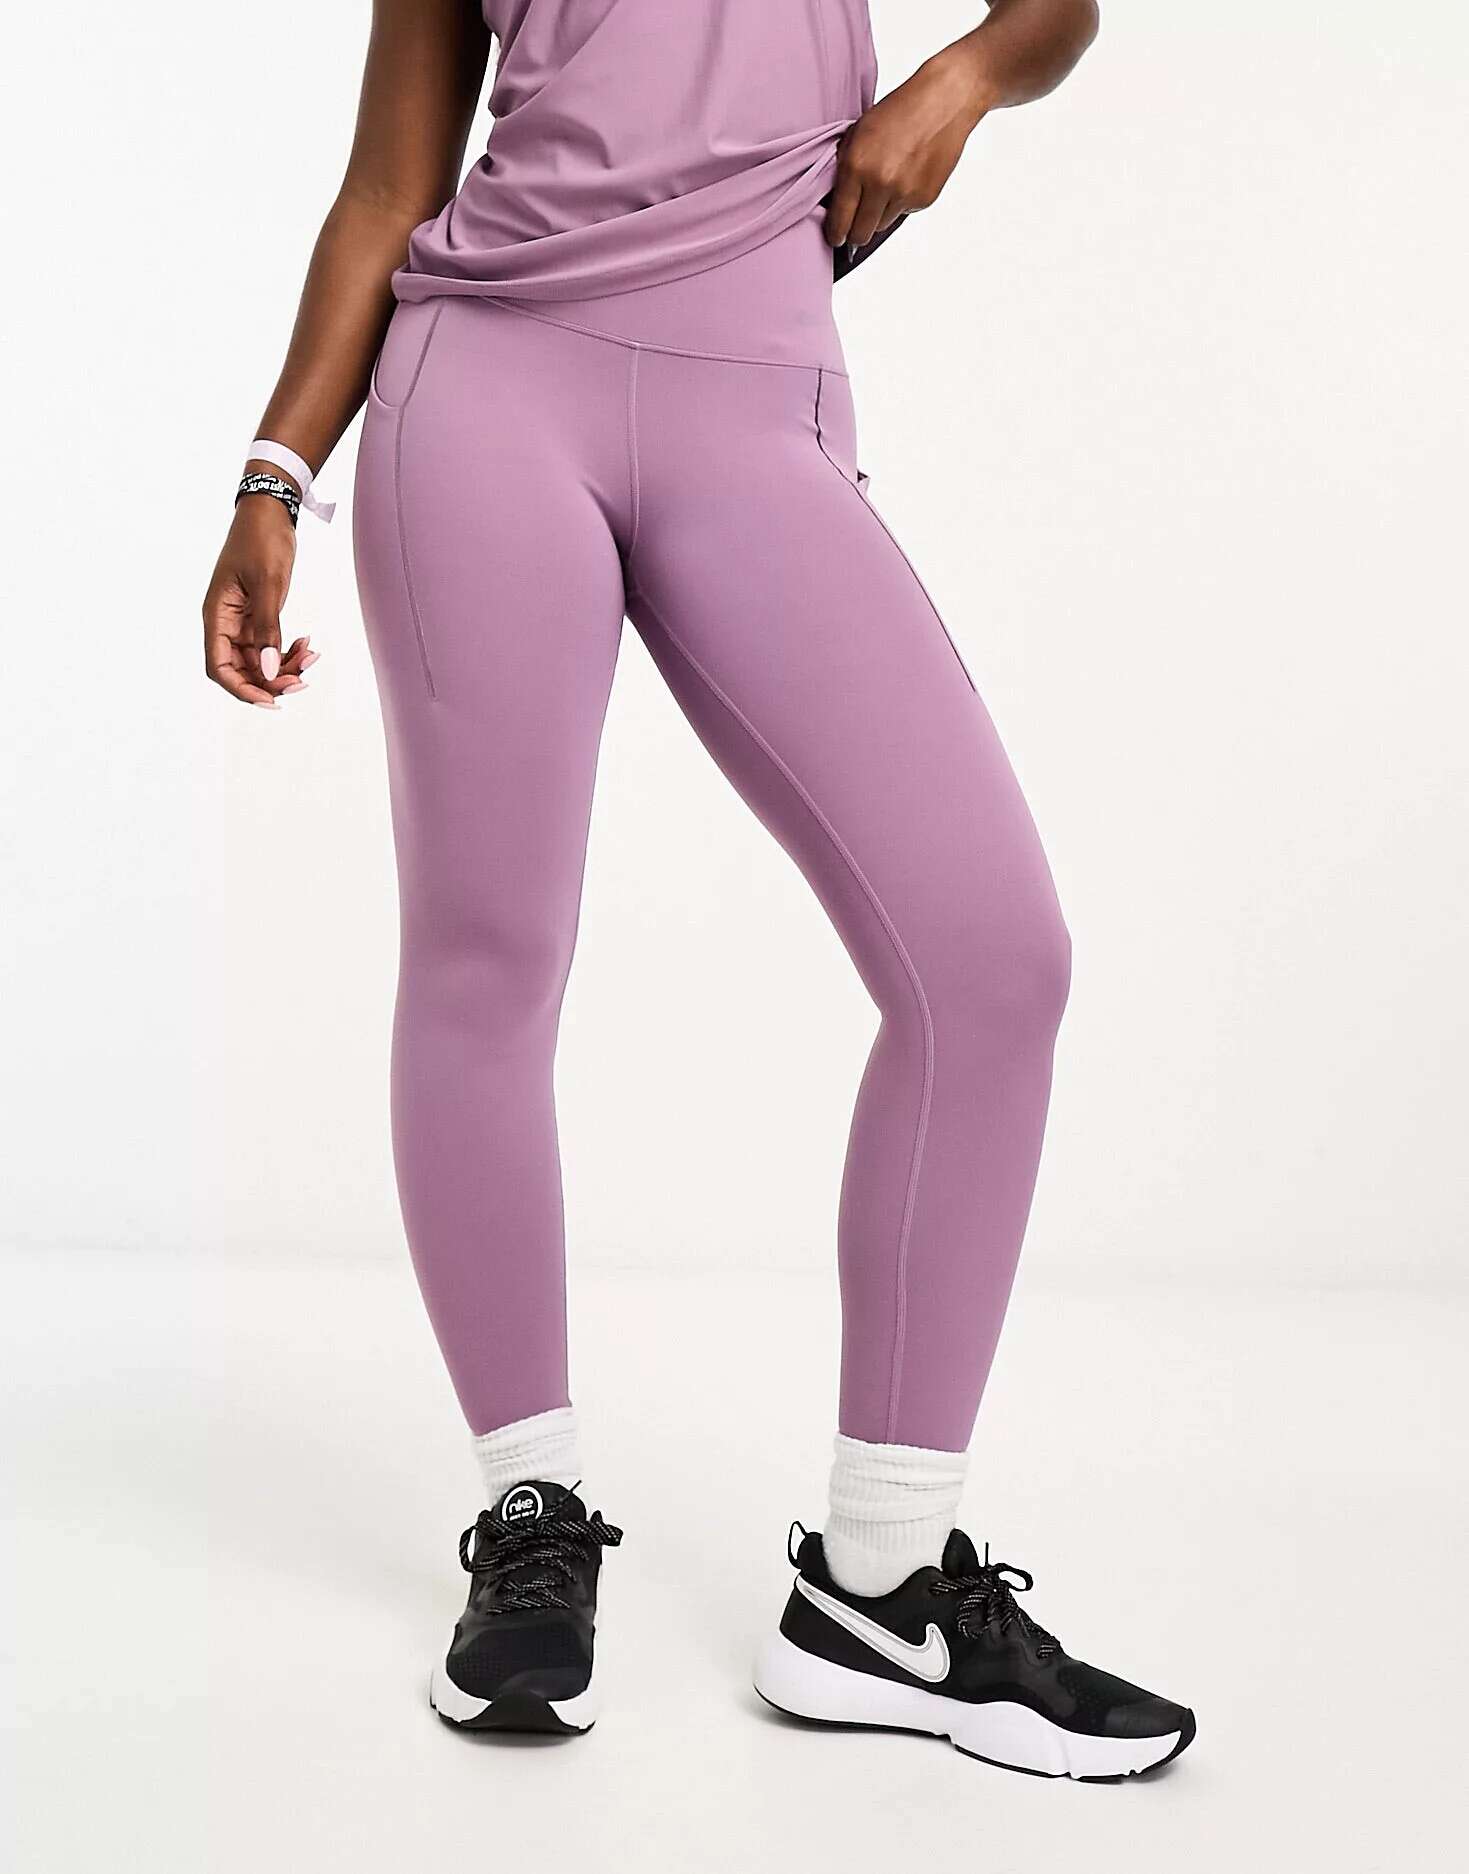 Фиолетовые леггинсы Nike Universa Dri-Fit 7/8 леггинсы universa nike цвет black